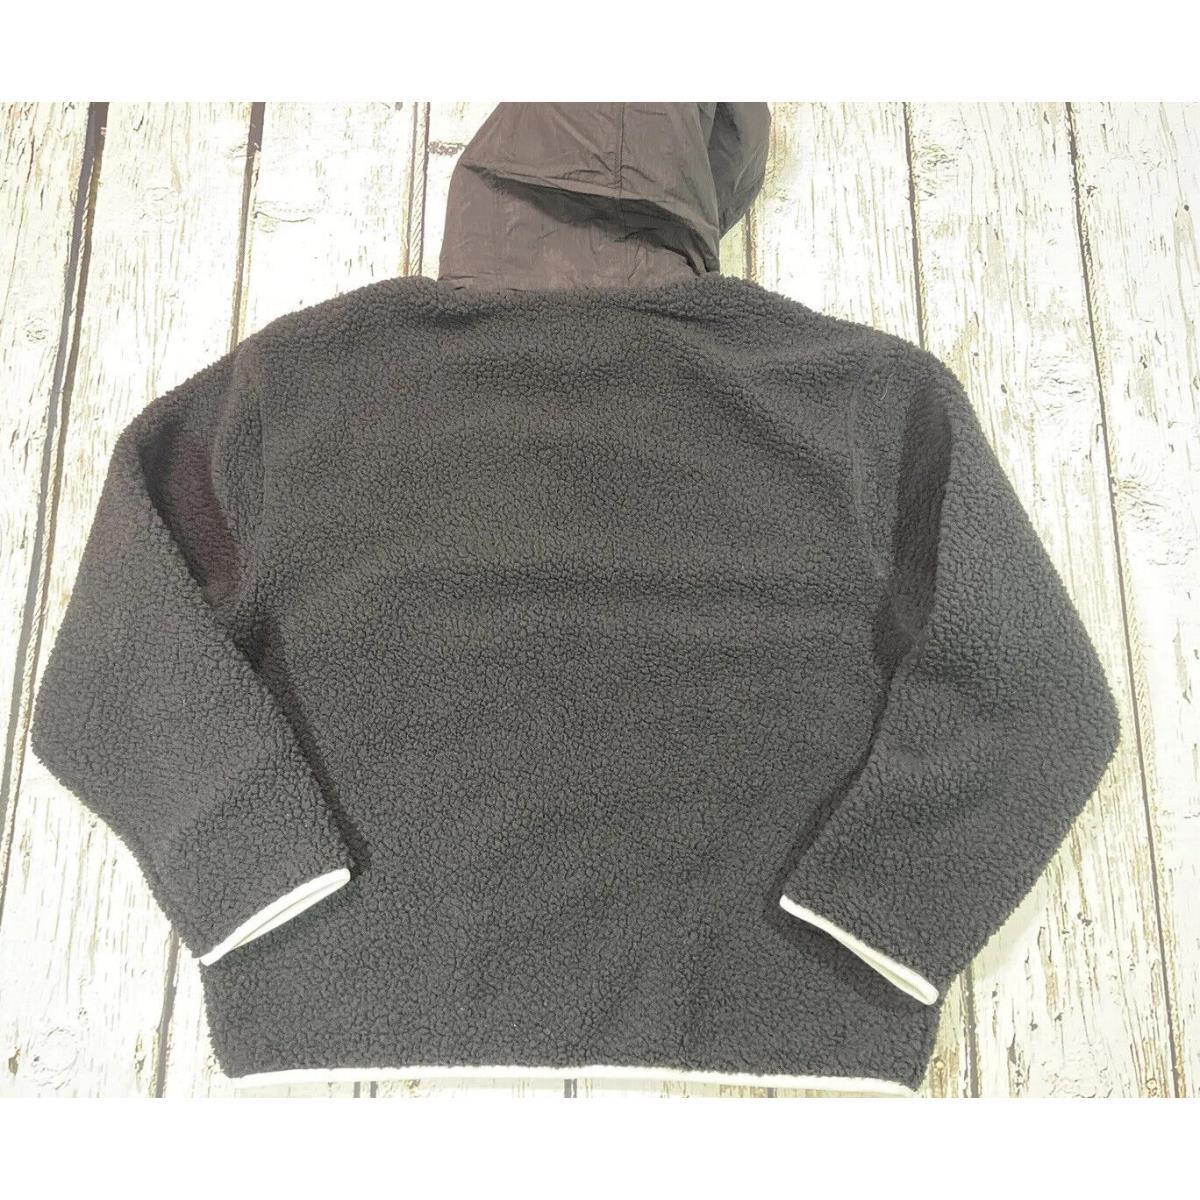 Nike Jordan Hoodie Medium Black Essential Winter Fleece Pullover DV1582-010 Mens